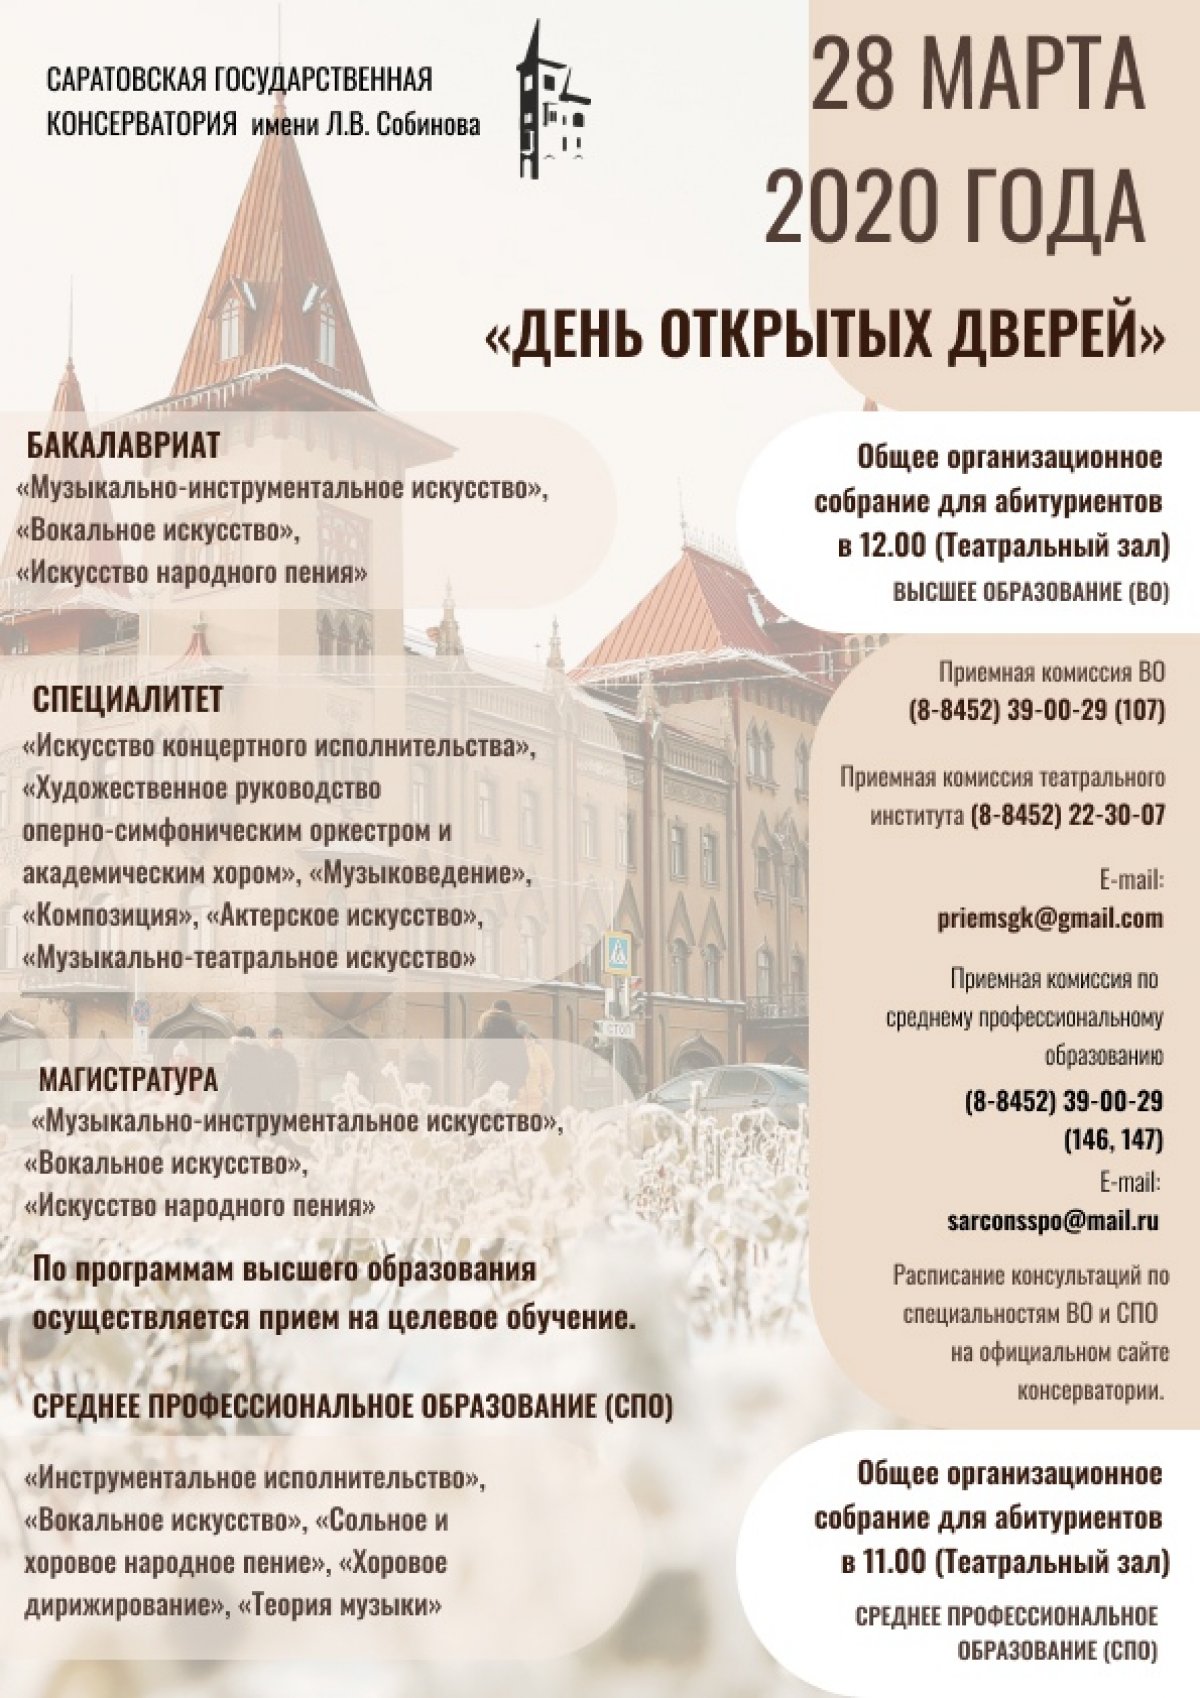 28 марта 2020 года Саратовская консерватория приглашает на День открытых дверей